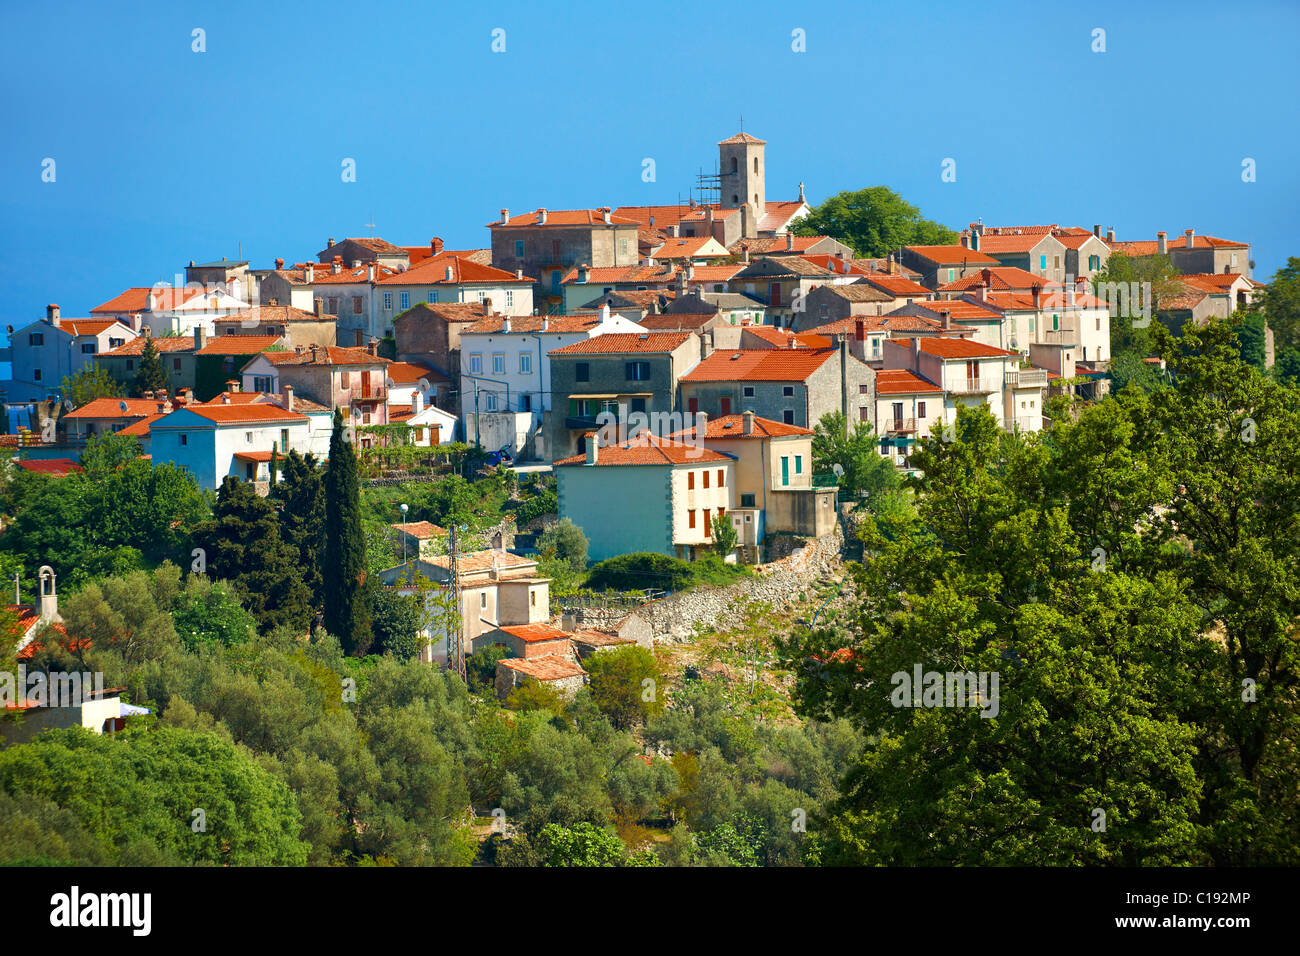 Beli hill town, île de Cres, Croatie Banque D'Images